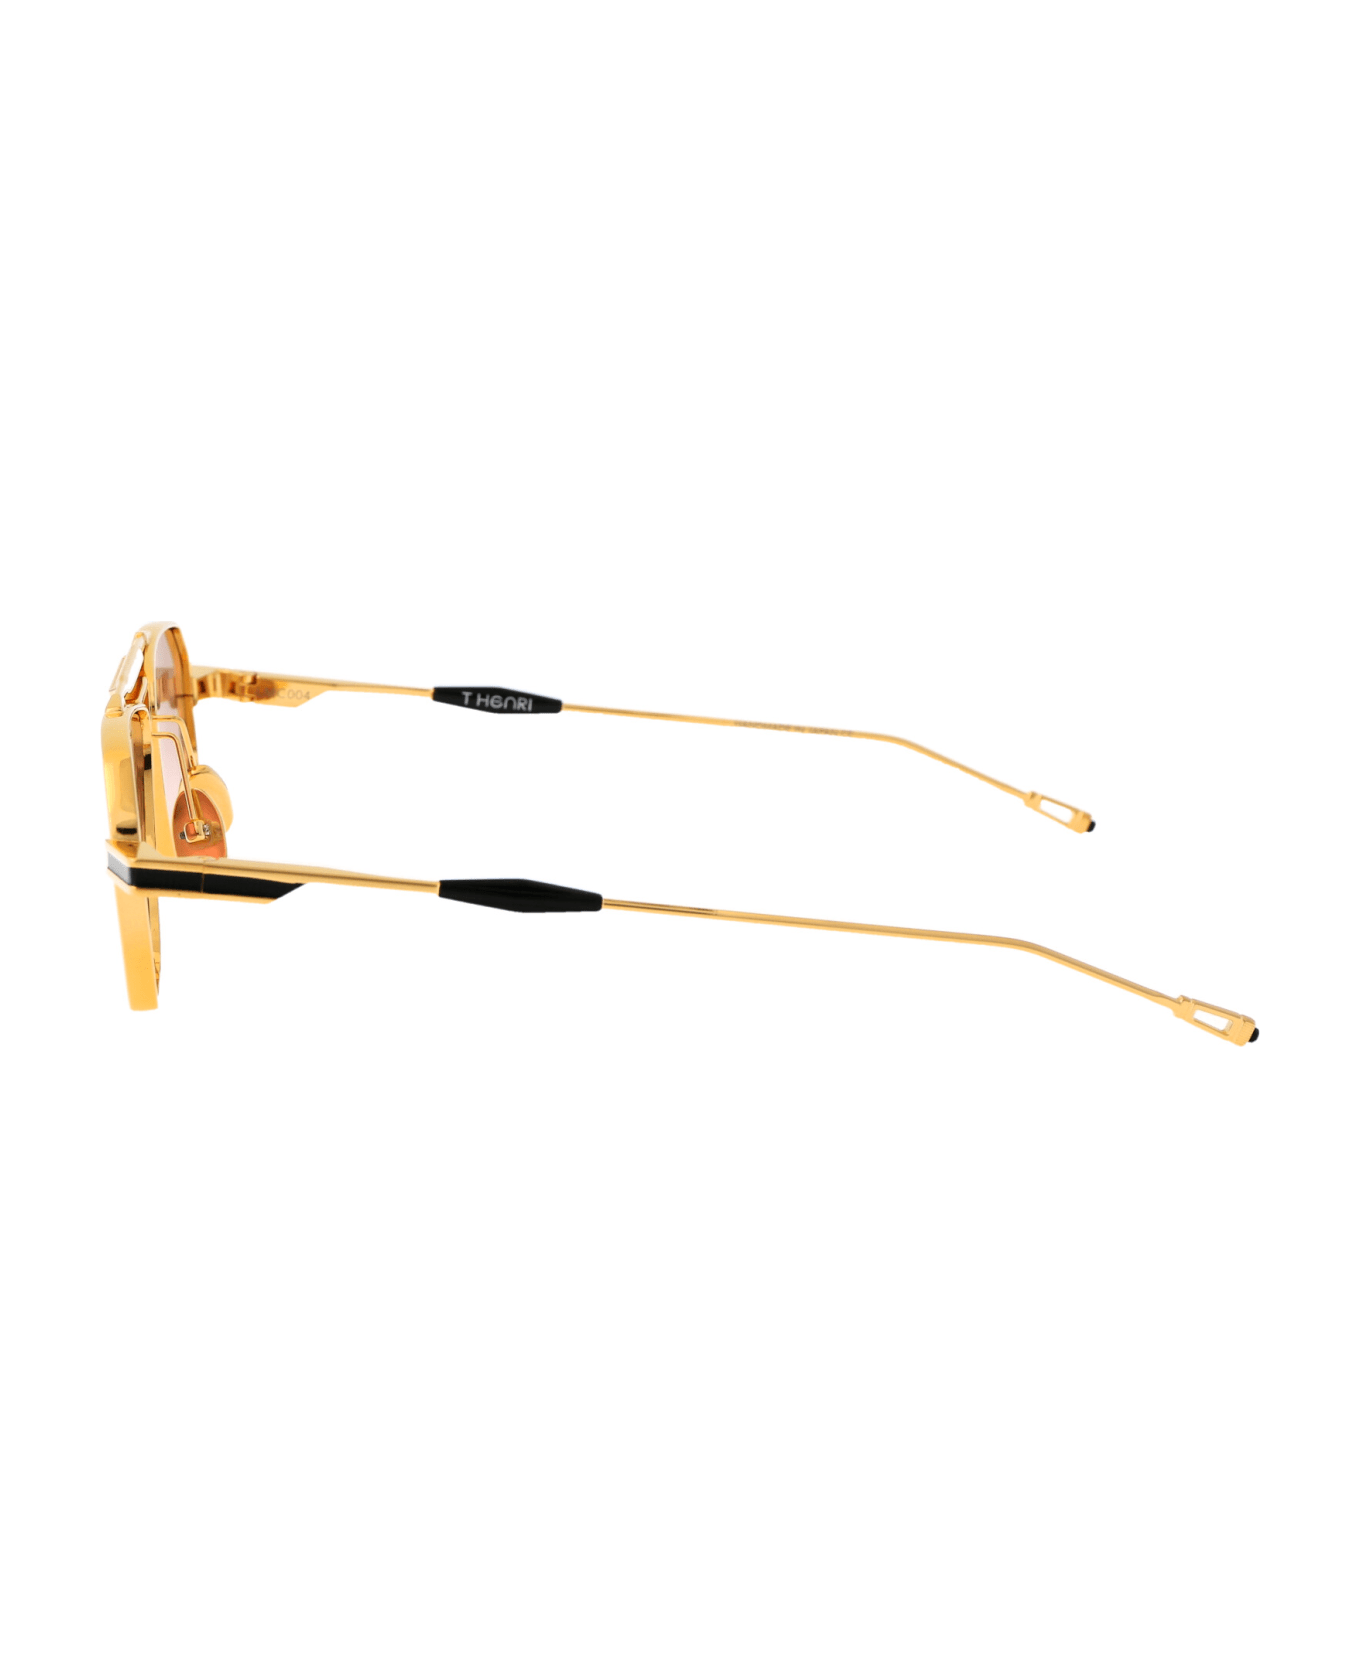 T Henri Longtail Sunglasses - CASINO ROYALE